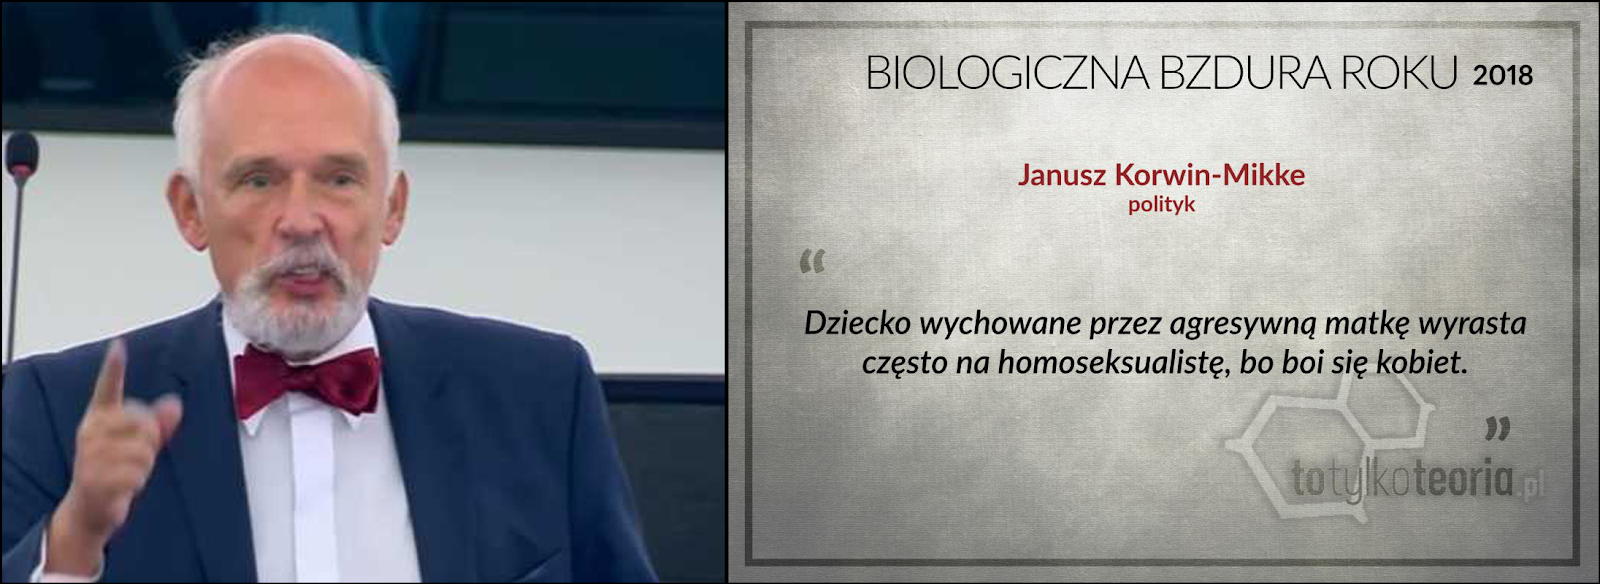 Janusz Korwin Mikke homoseksualizm Biologiczna Bzdura Roku 2018